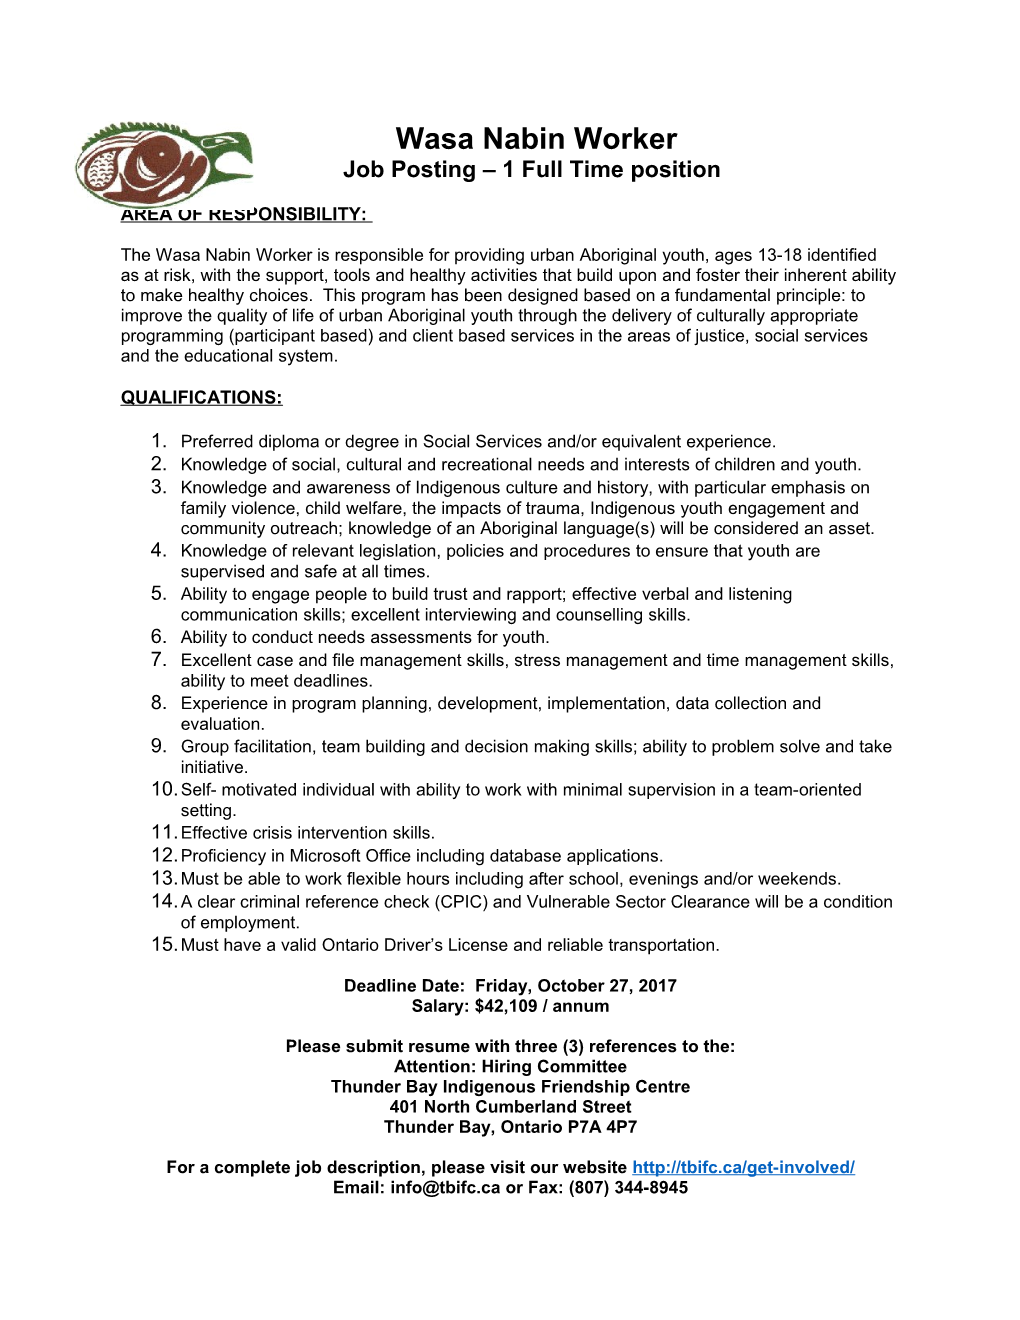 Job Posting 1 Full Time Position